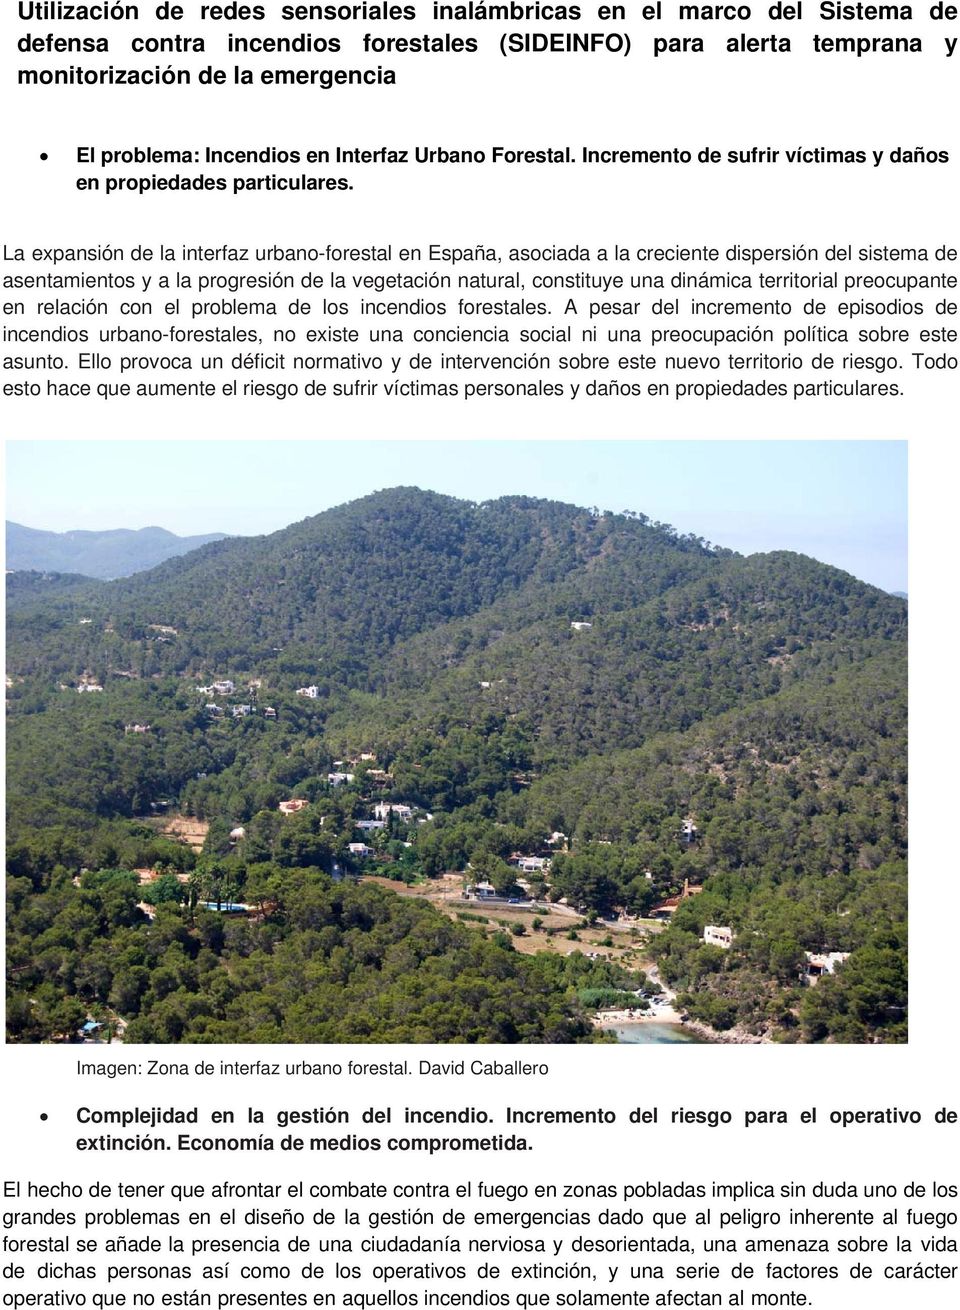 La expansión de la interfaz urbano-forestal en España, asociada a la creciente dispersión del sistema de asentamientos y a la progresión de la vegetación natural, constituye una dinámica territorial